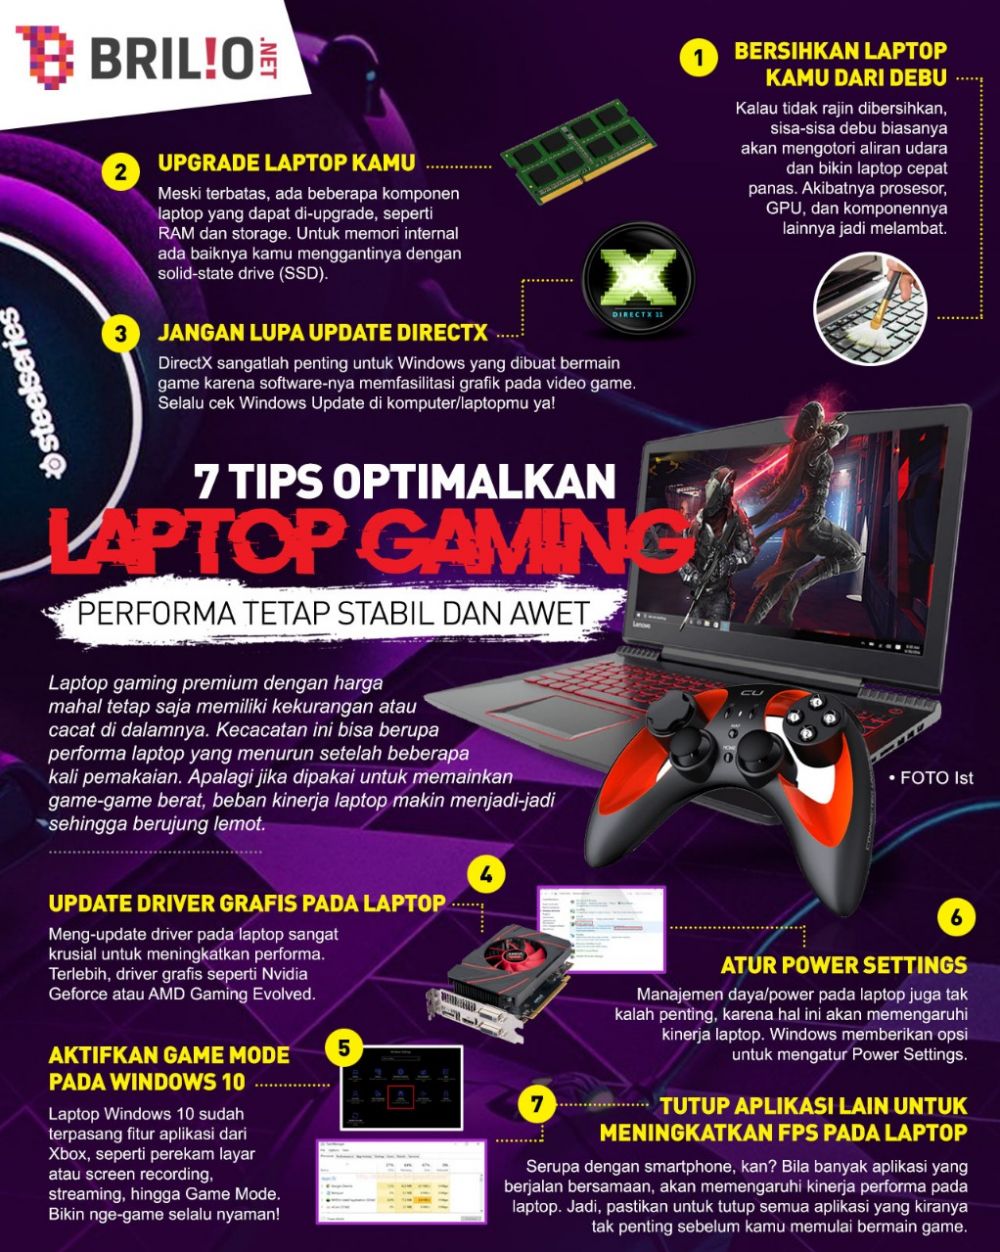 9 Tips optimalkan laptop gaming, jangan lupa bersihkan debu